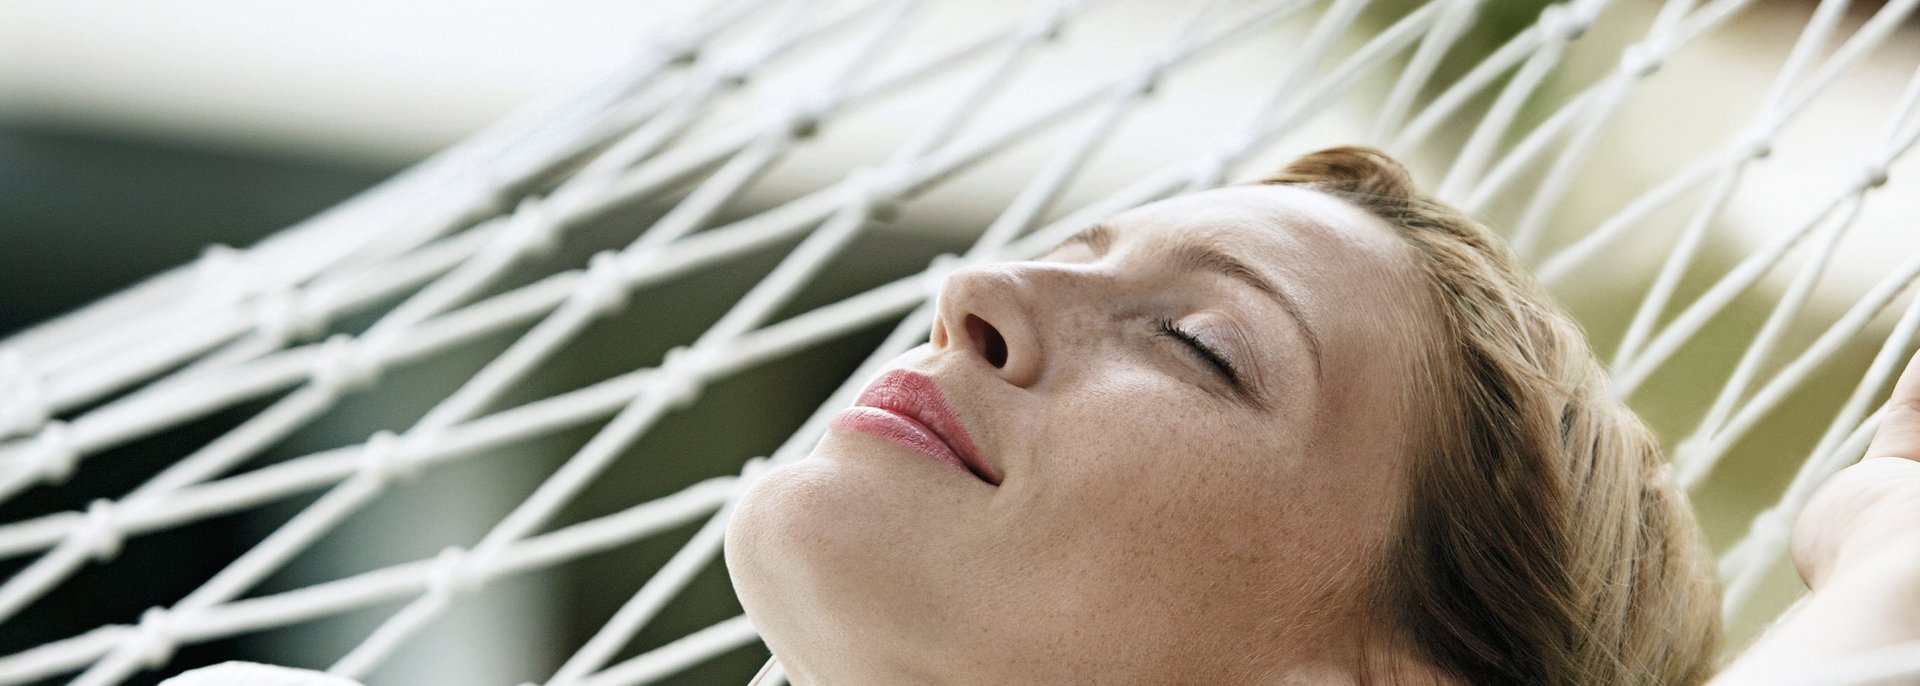 Eine junge Frau entspannt mit Kopfhörern in einer weissen Netz-Hängematte.